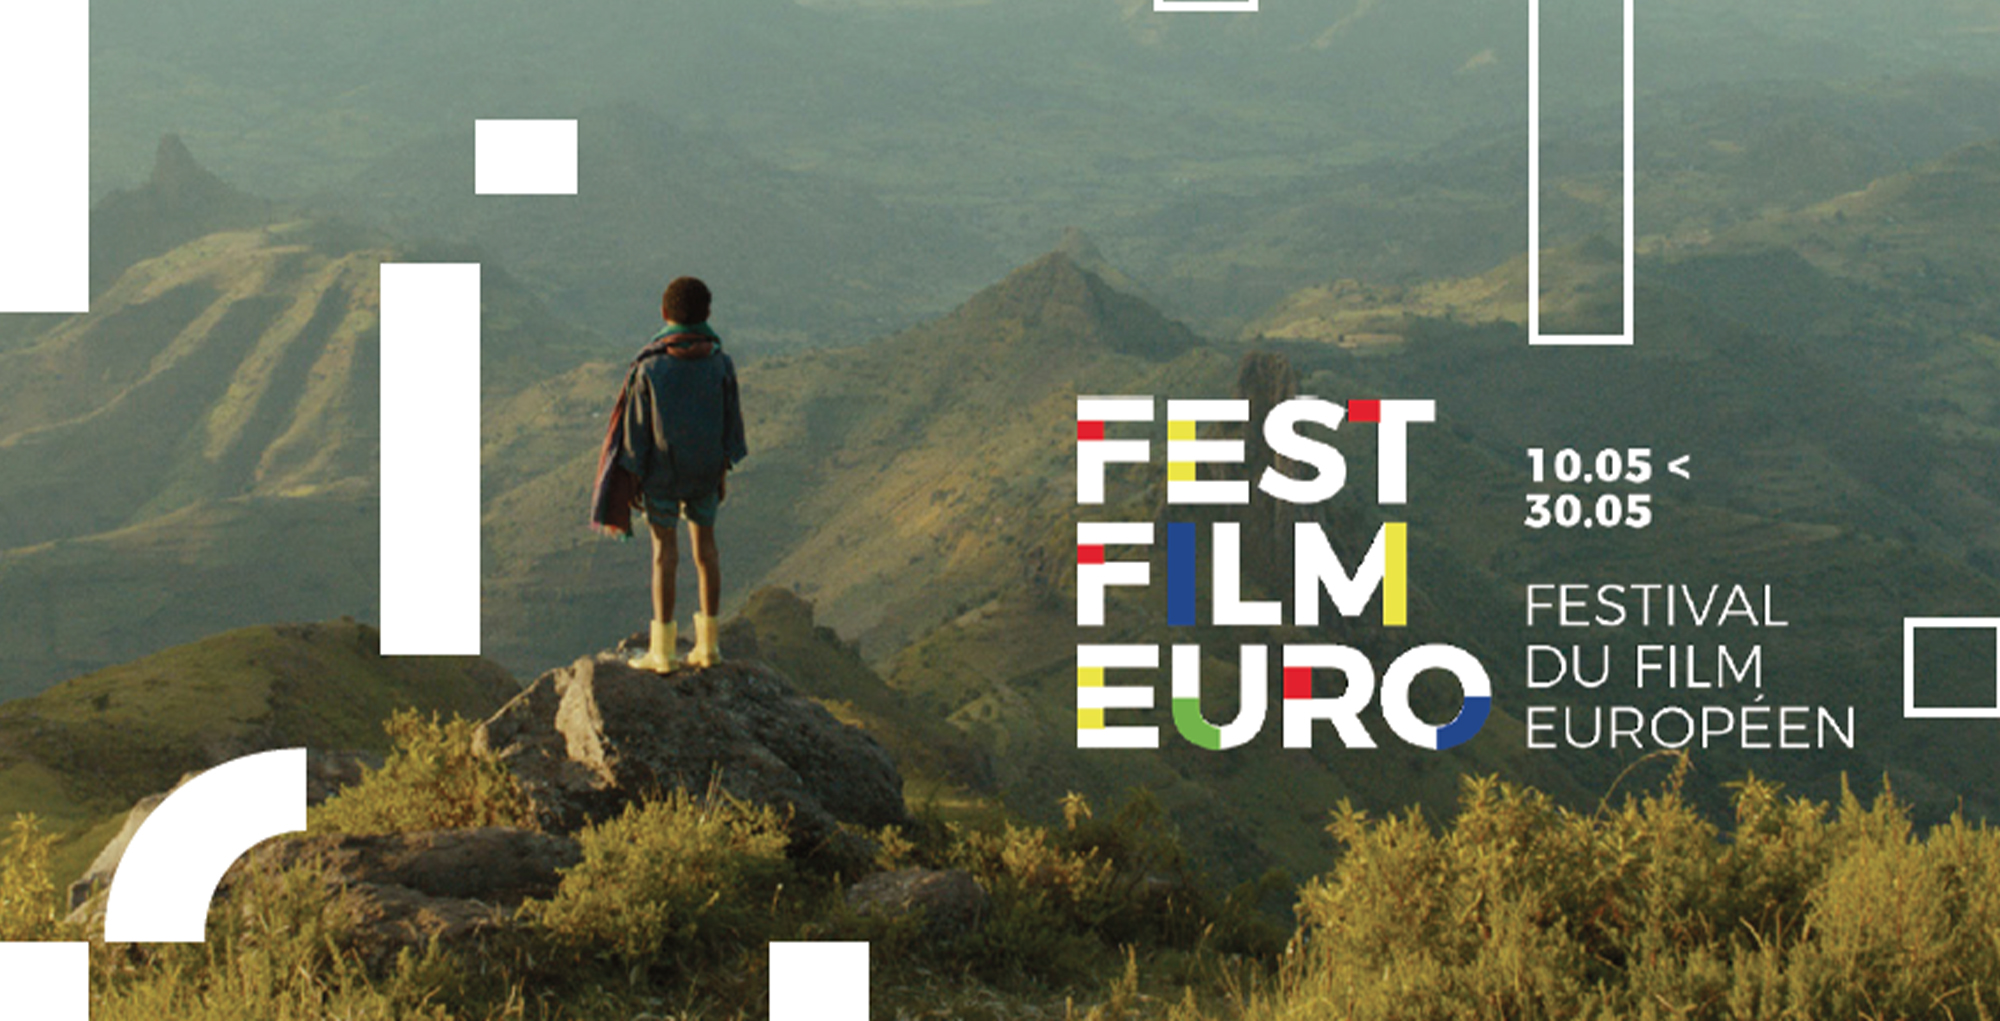 La 6e édition du Festival du Film Européen en RDC se tiendra du 10 au 30 mai (DR)